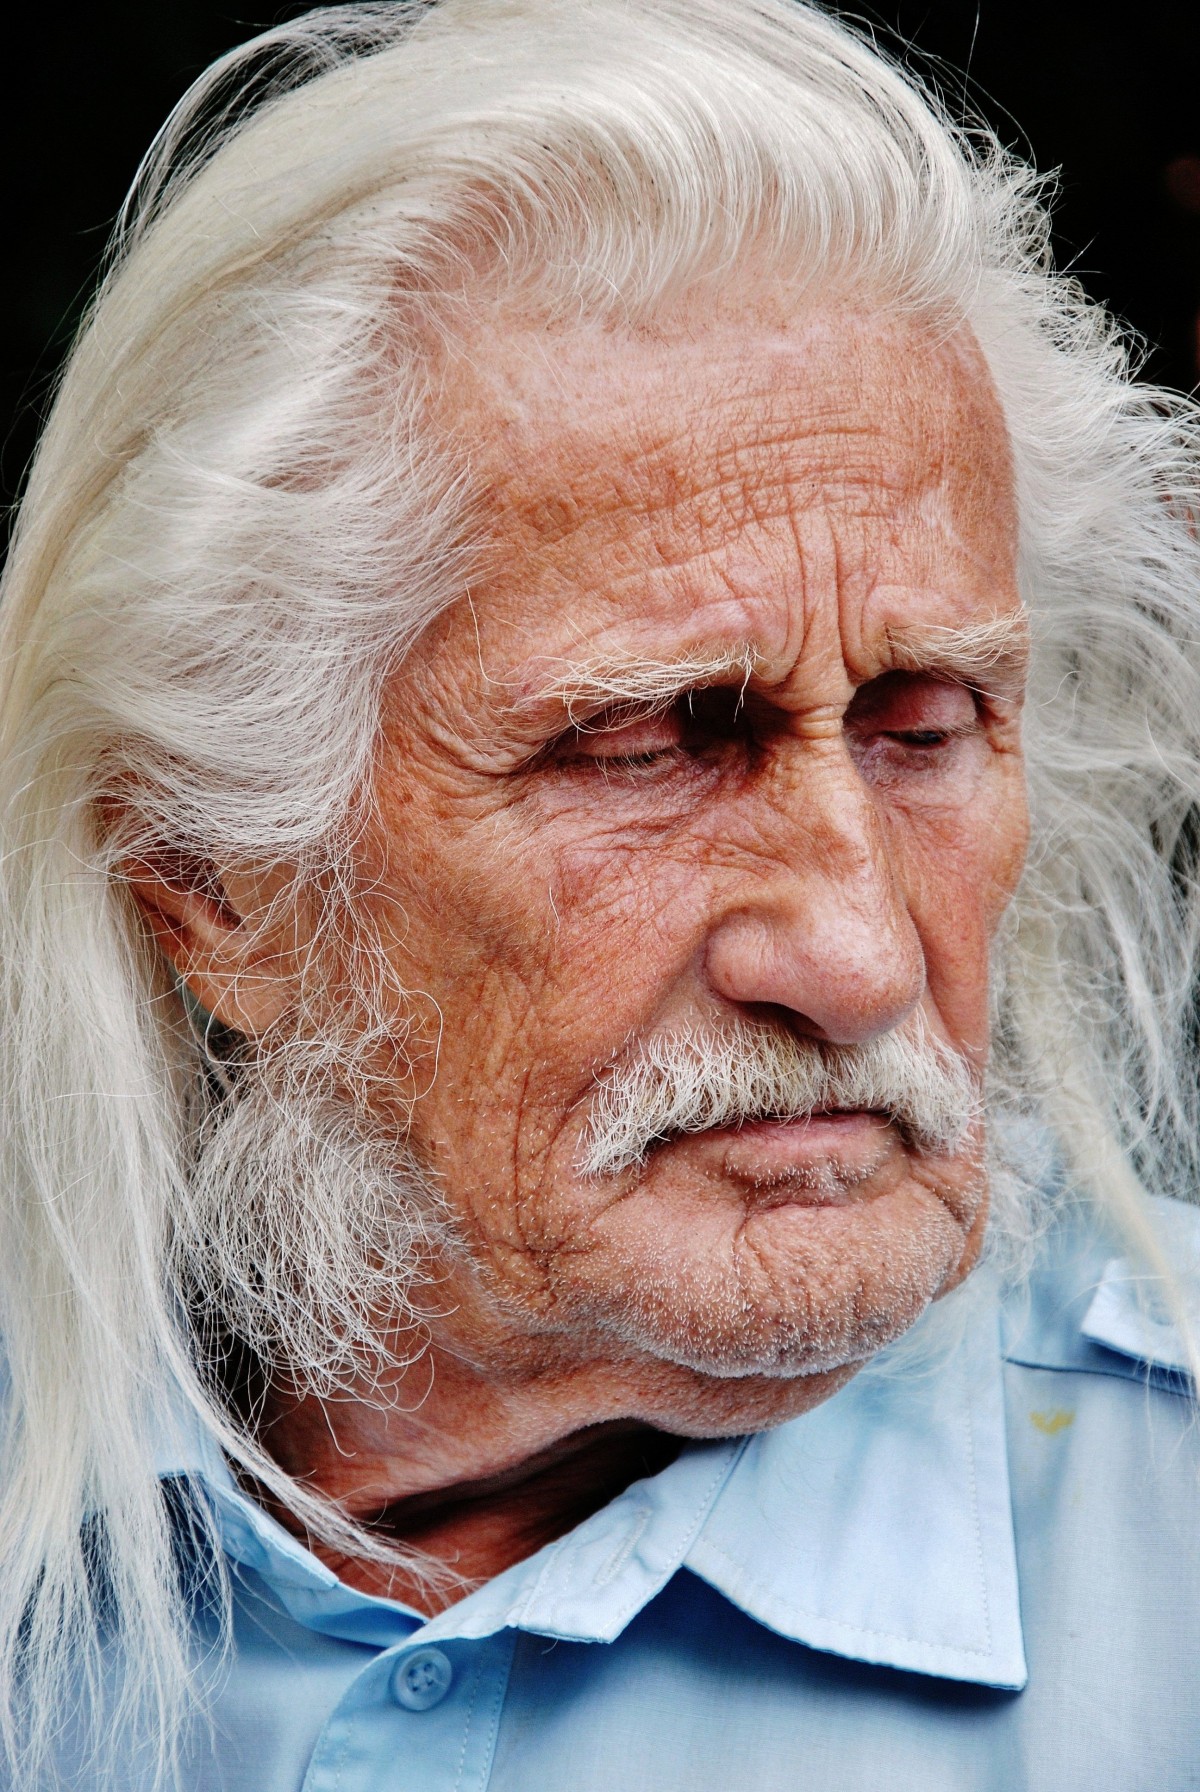 La imagen muestra a un hombre mayor con el pelo largo y con una barba y bigotes muy poblados.